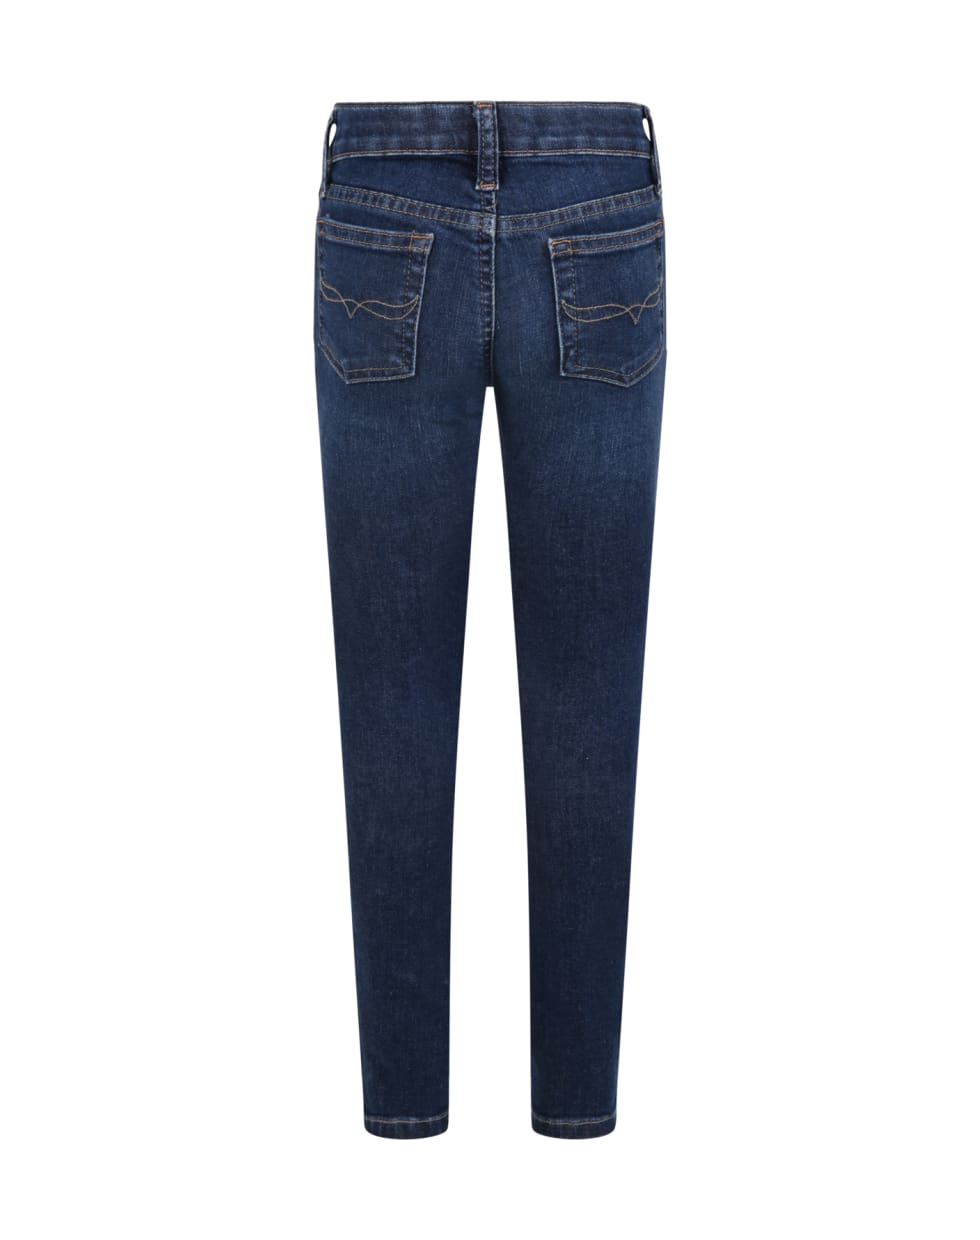 Ralph Lauren Blue Jeans For Girl - Denim